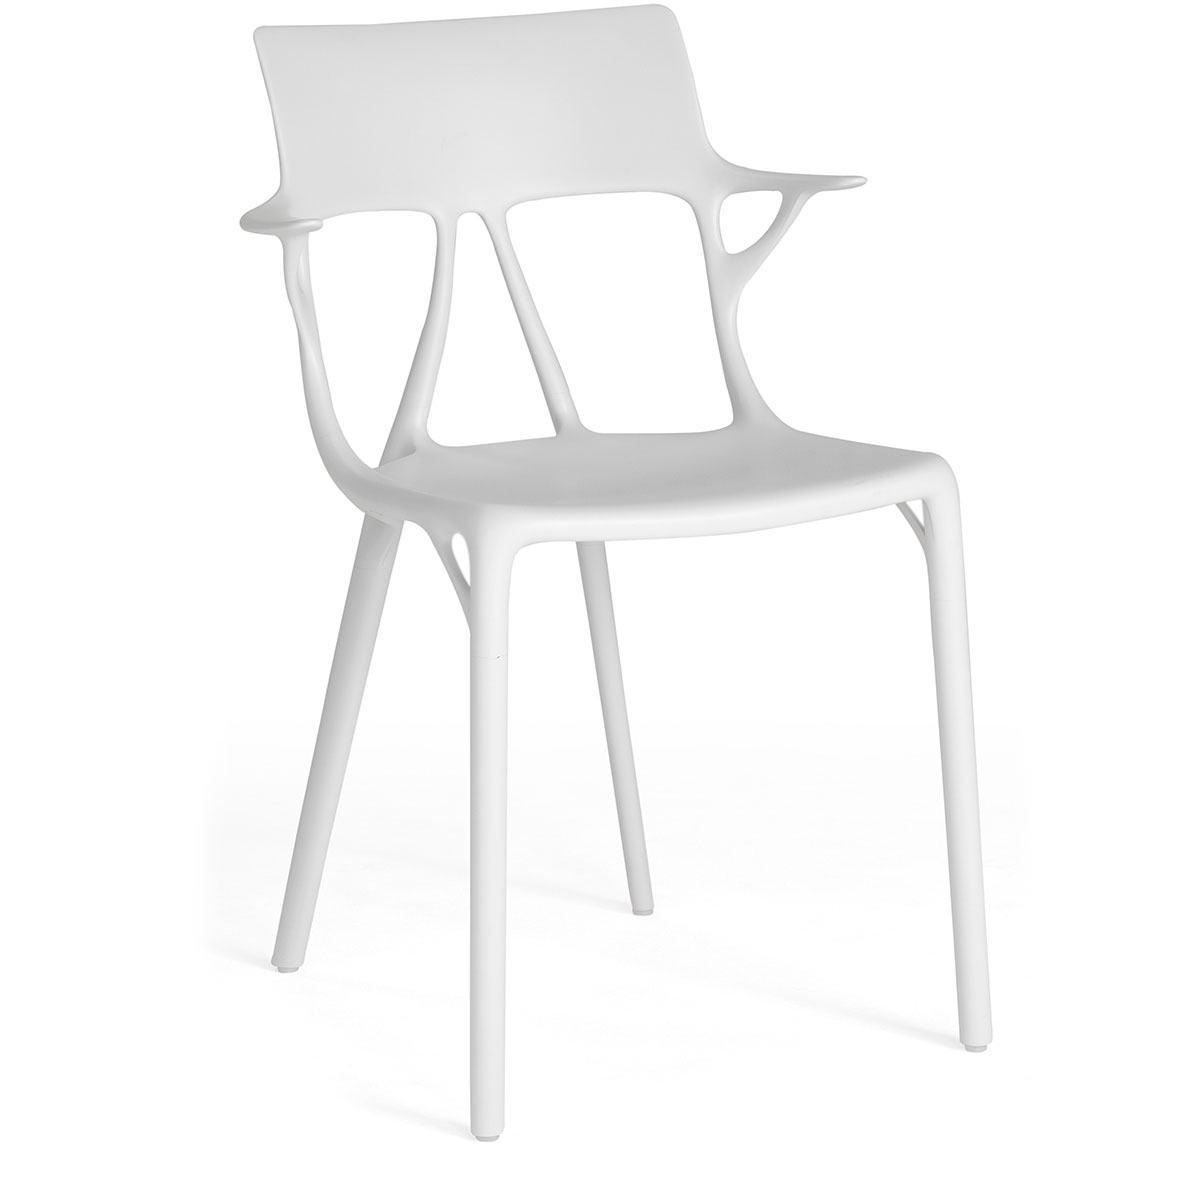 A.I.  Chair, White